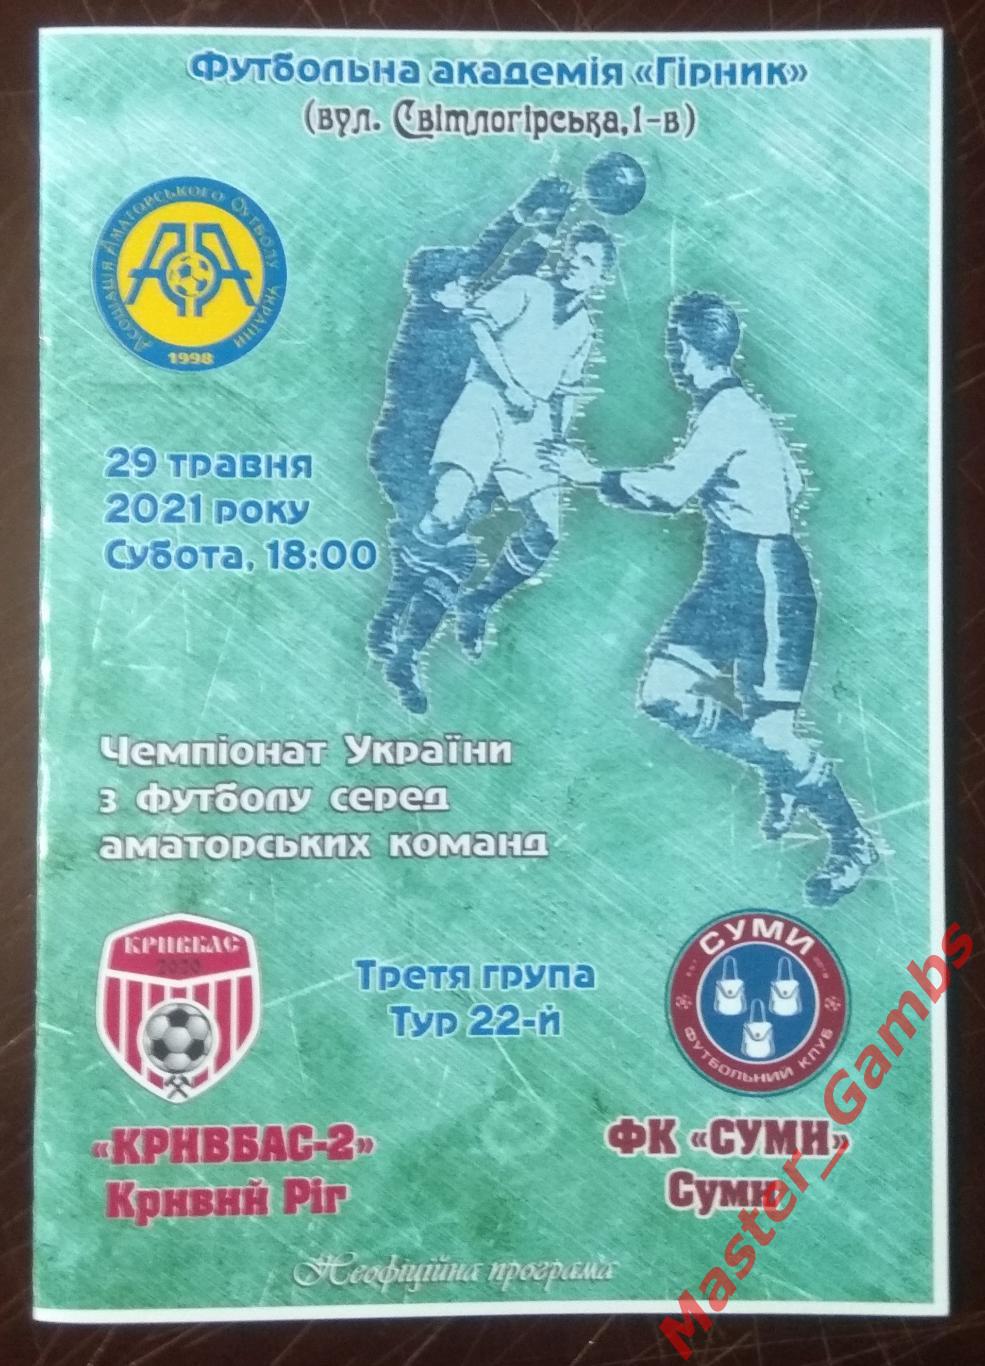 Кривбасс - 2 Кривой Рог - ФК Сумы 2020/2021*